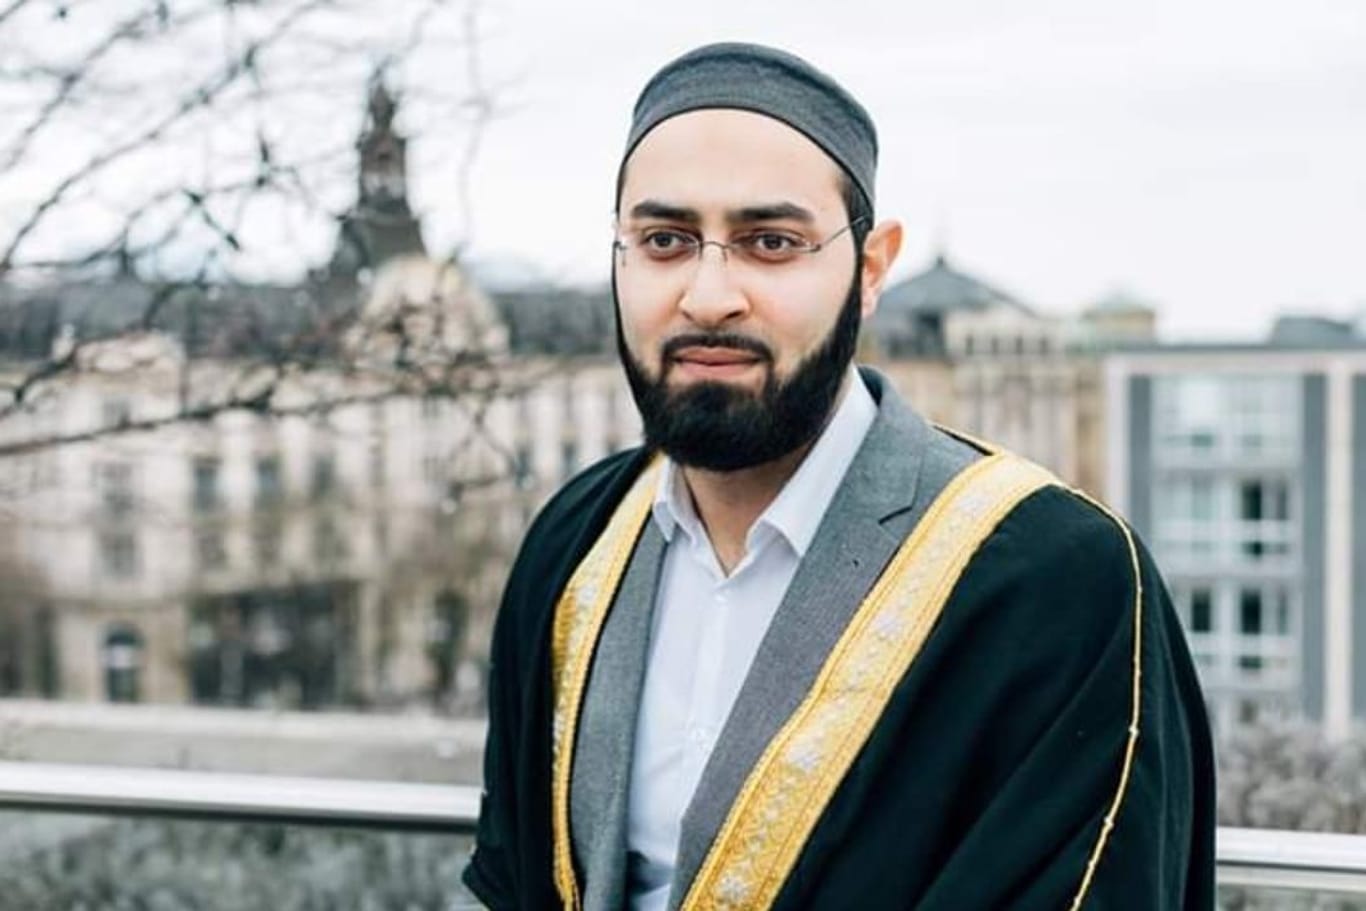 Imam Ahmad Popal: Der 34-Jährige ist in München geboren und aufgewachsen.